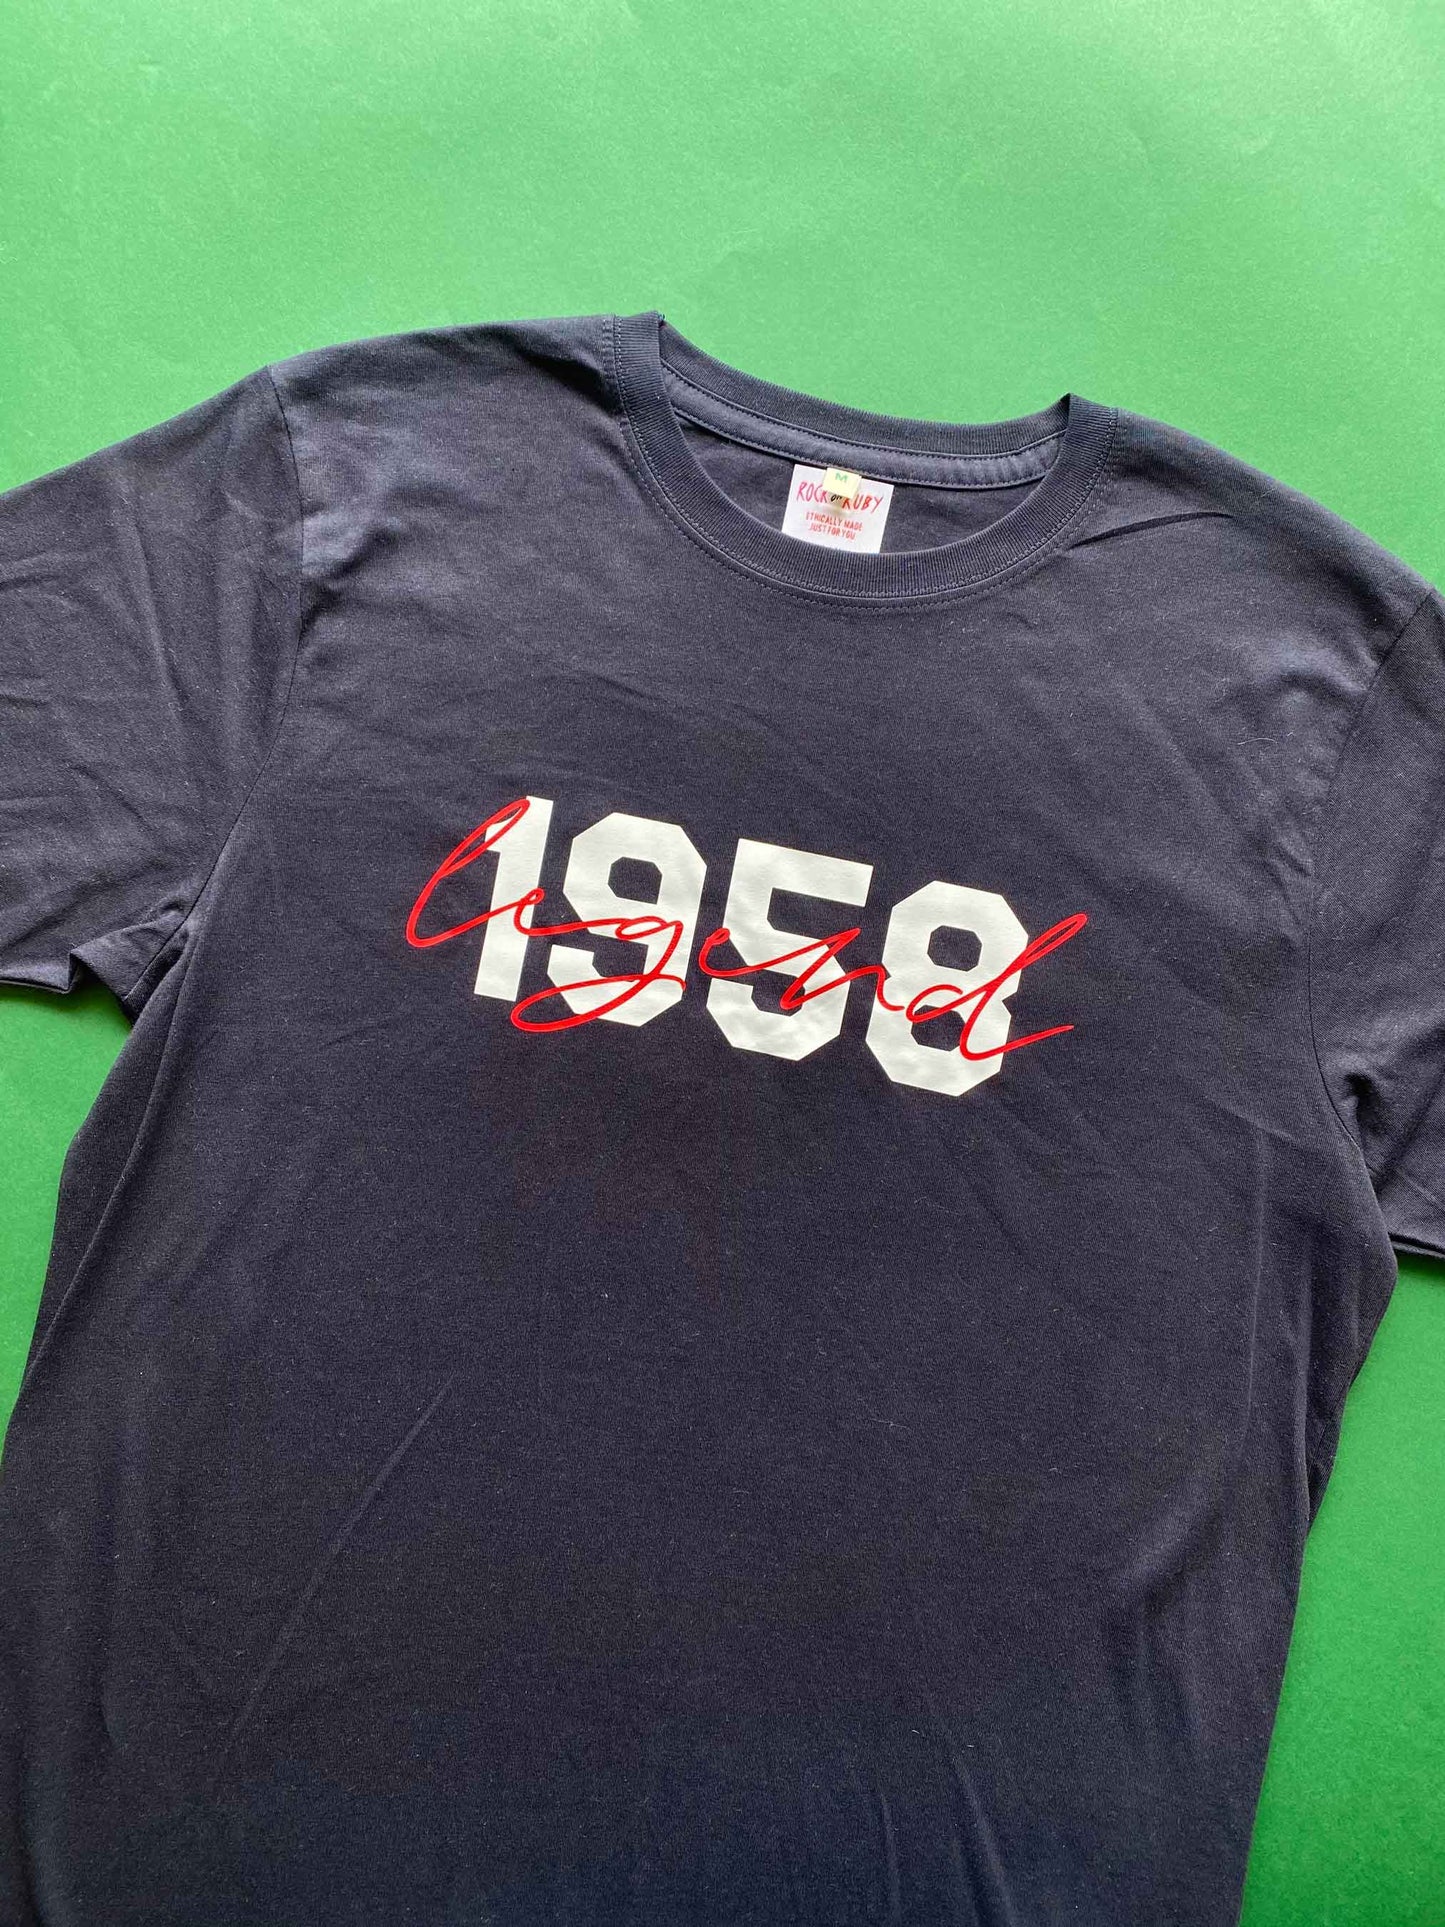 M 1958 Legend T-Shirt SALE